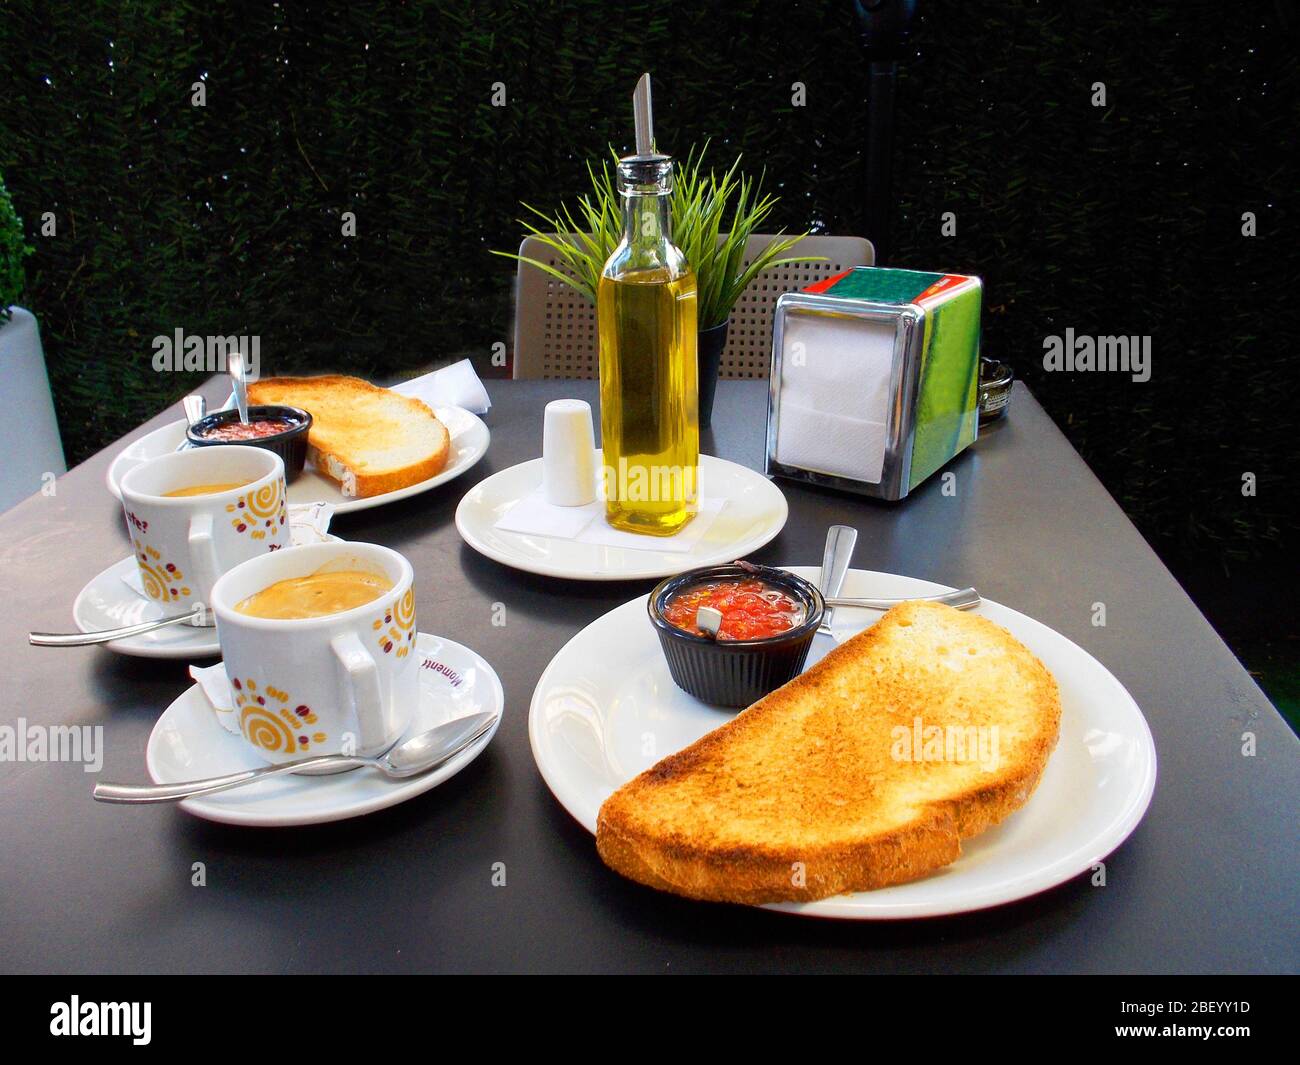 Petit déjeuner espagnol : huile d'olive, toast, tomate et tasse de café. Espagne. Banque D'Images